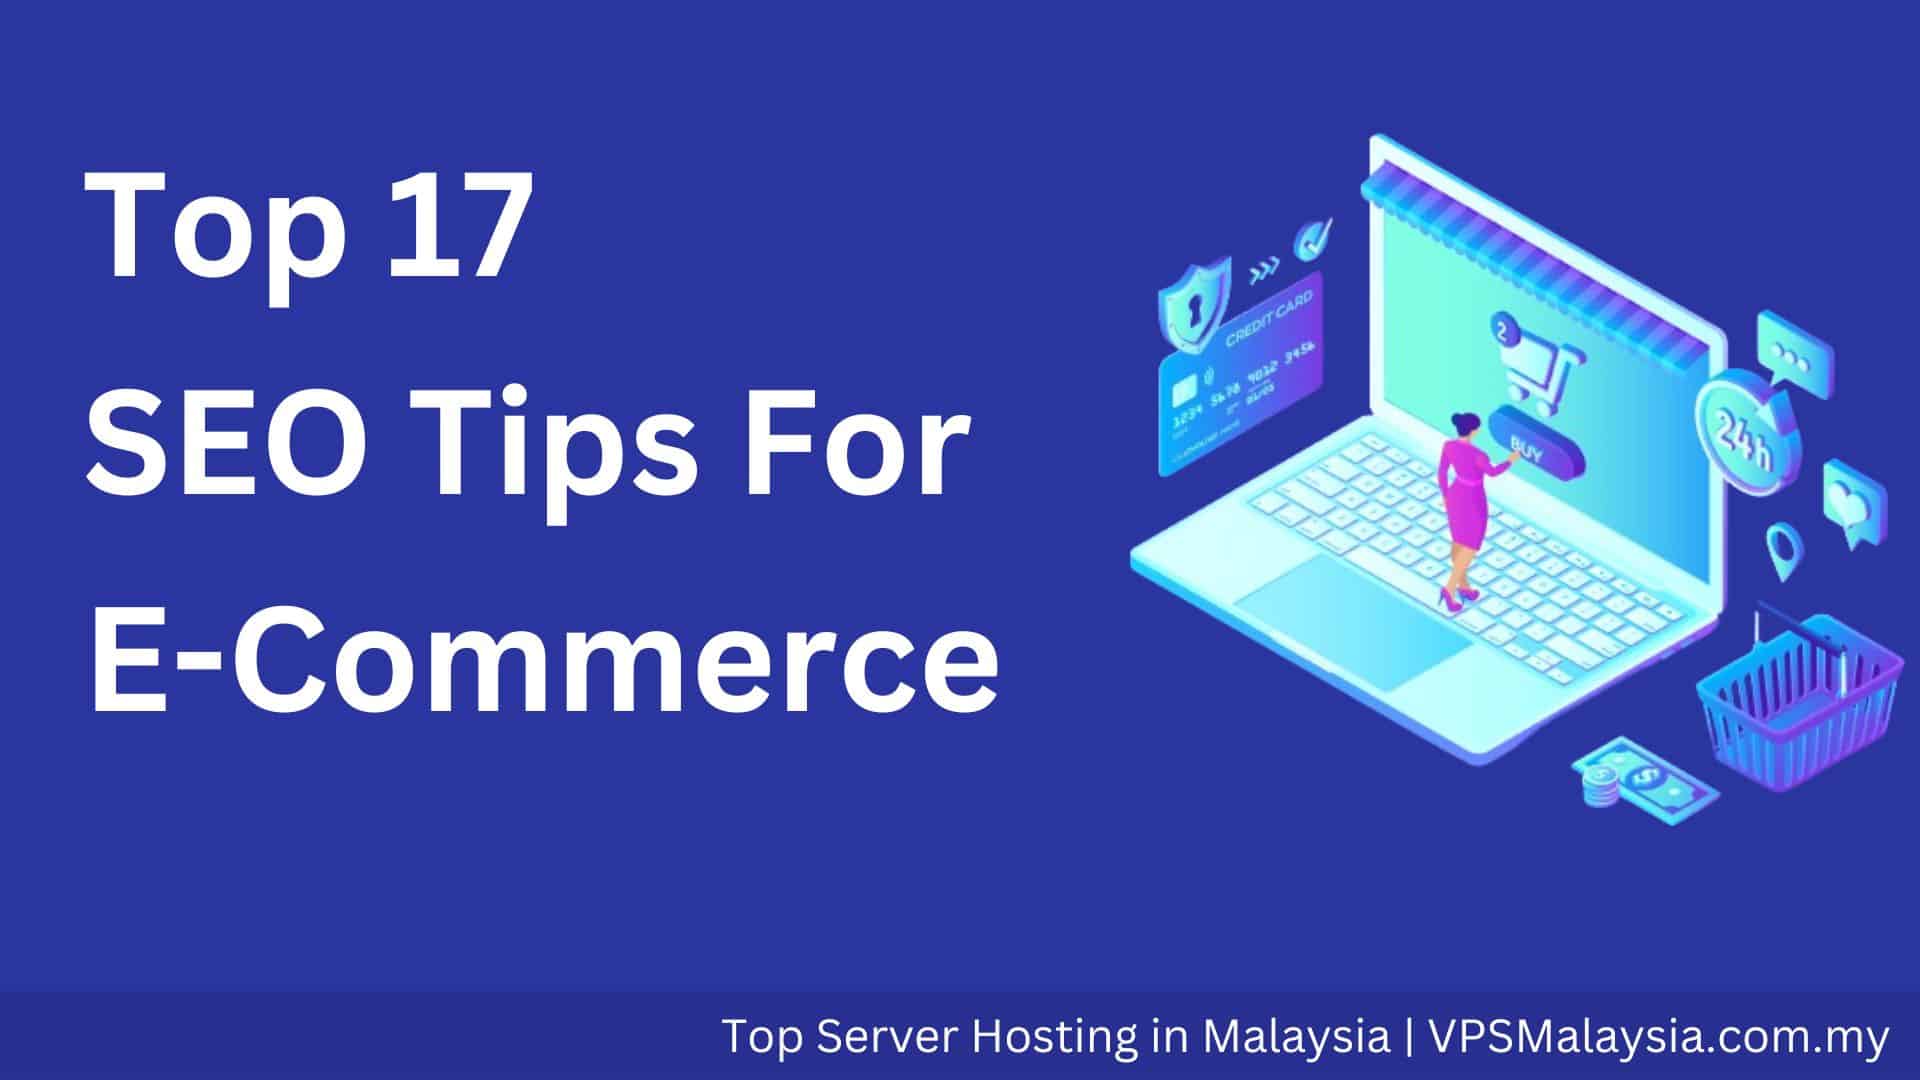 SEO tips for E-commerce